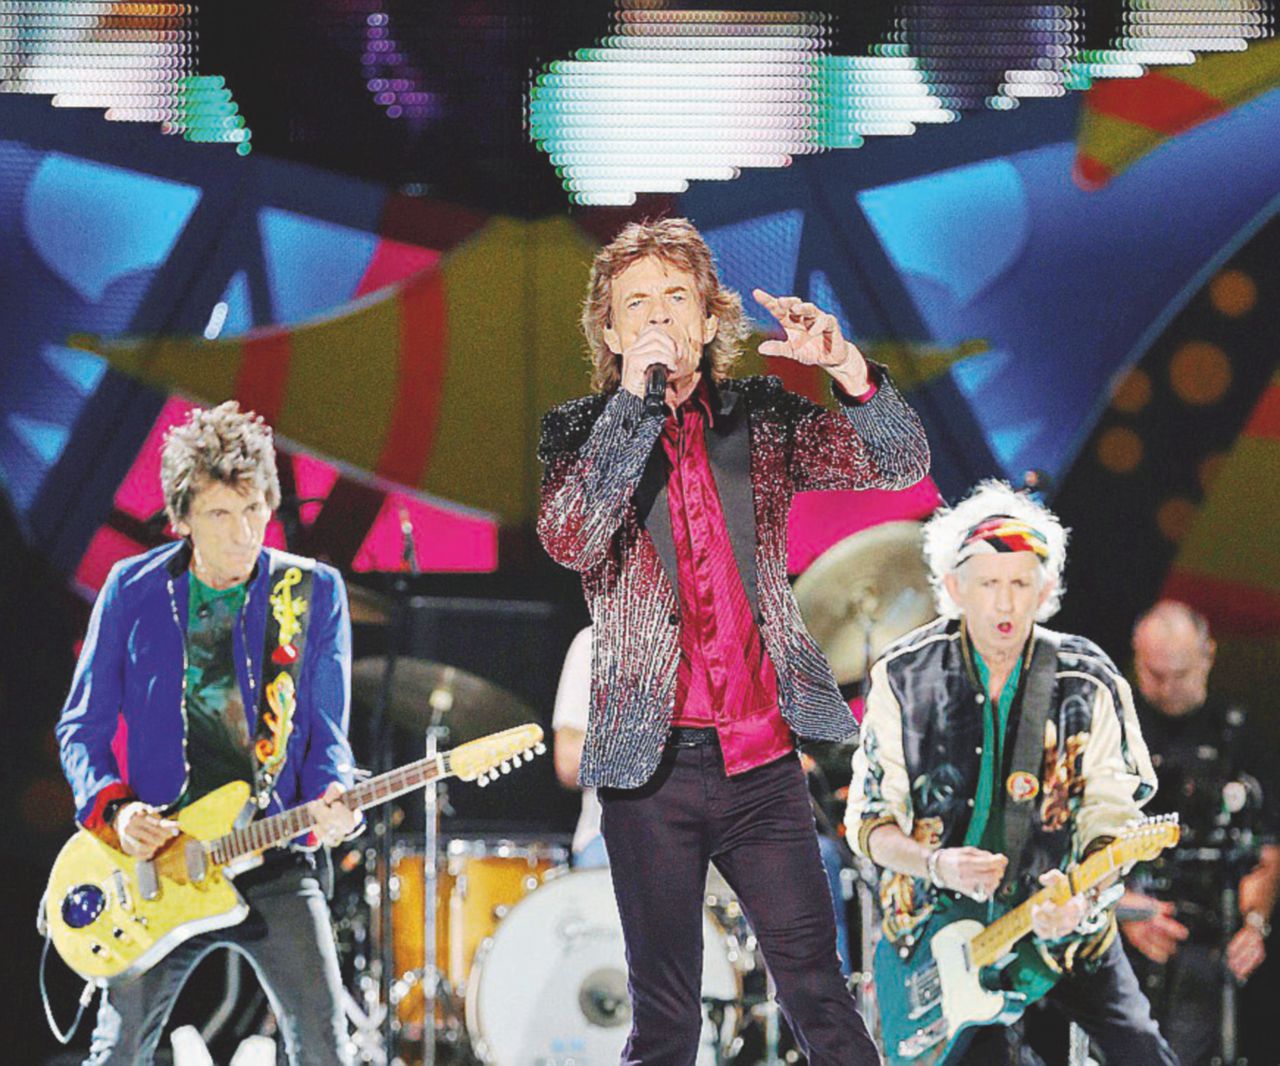 Copertina di Rolling Stones: troppi soldi però ben spesi